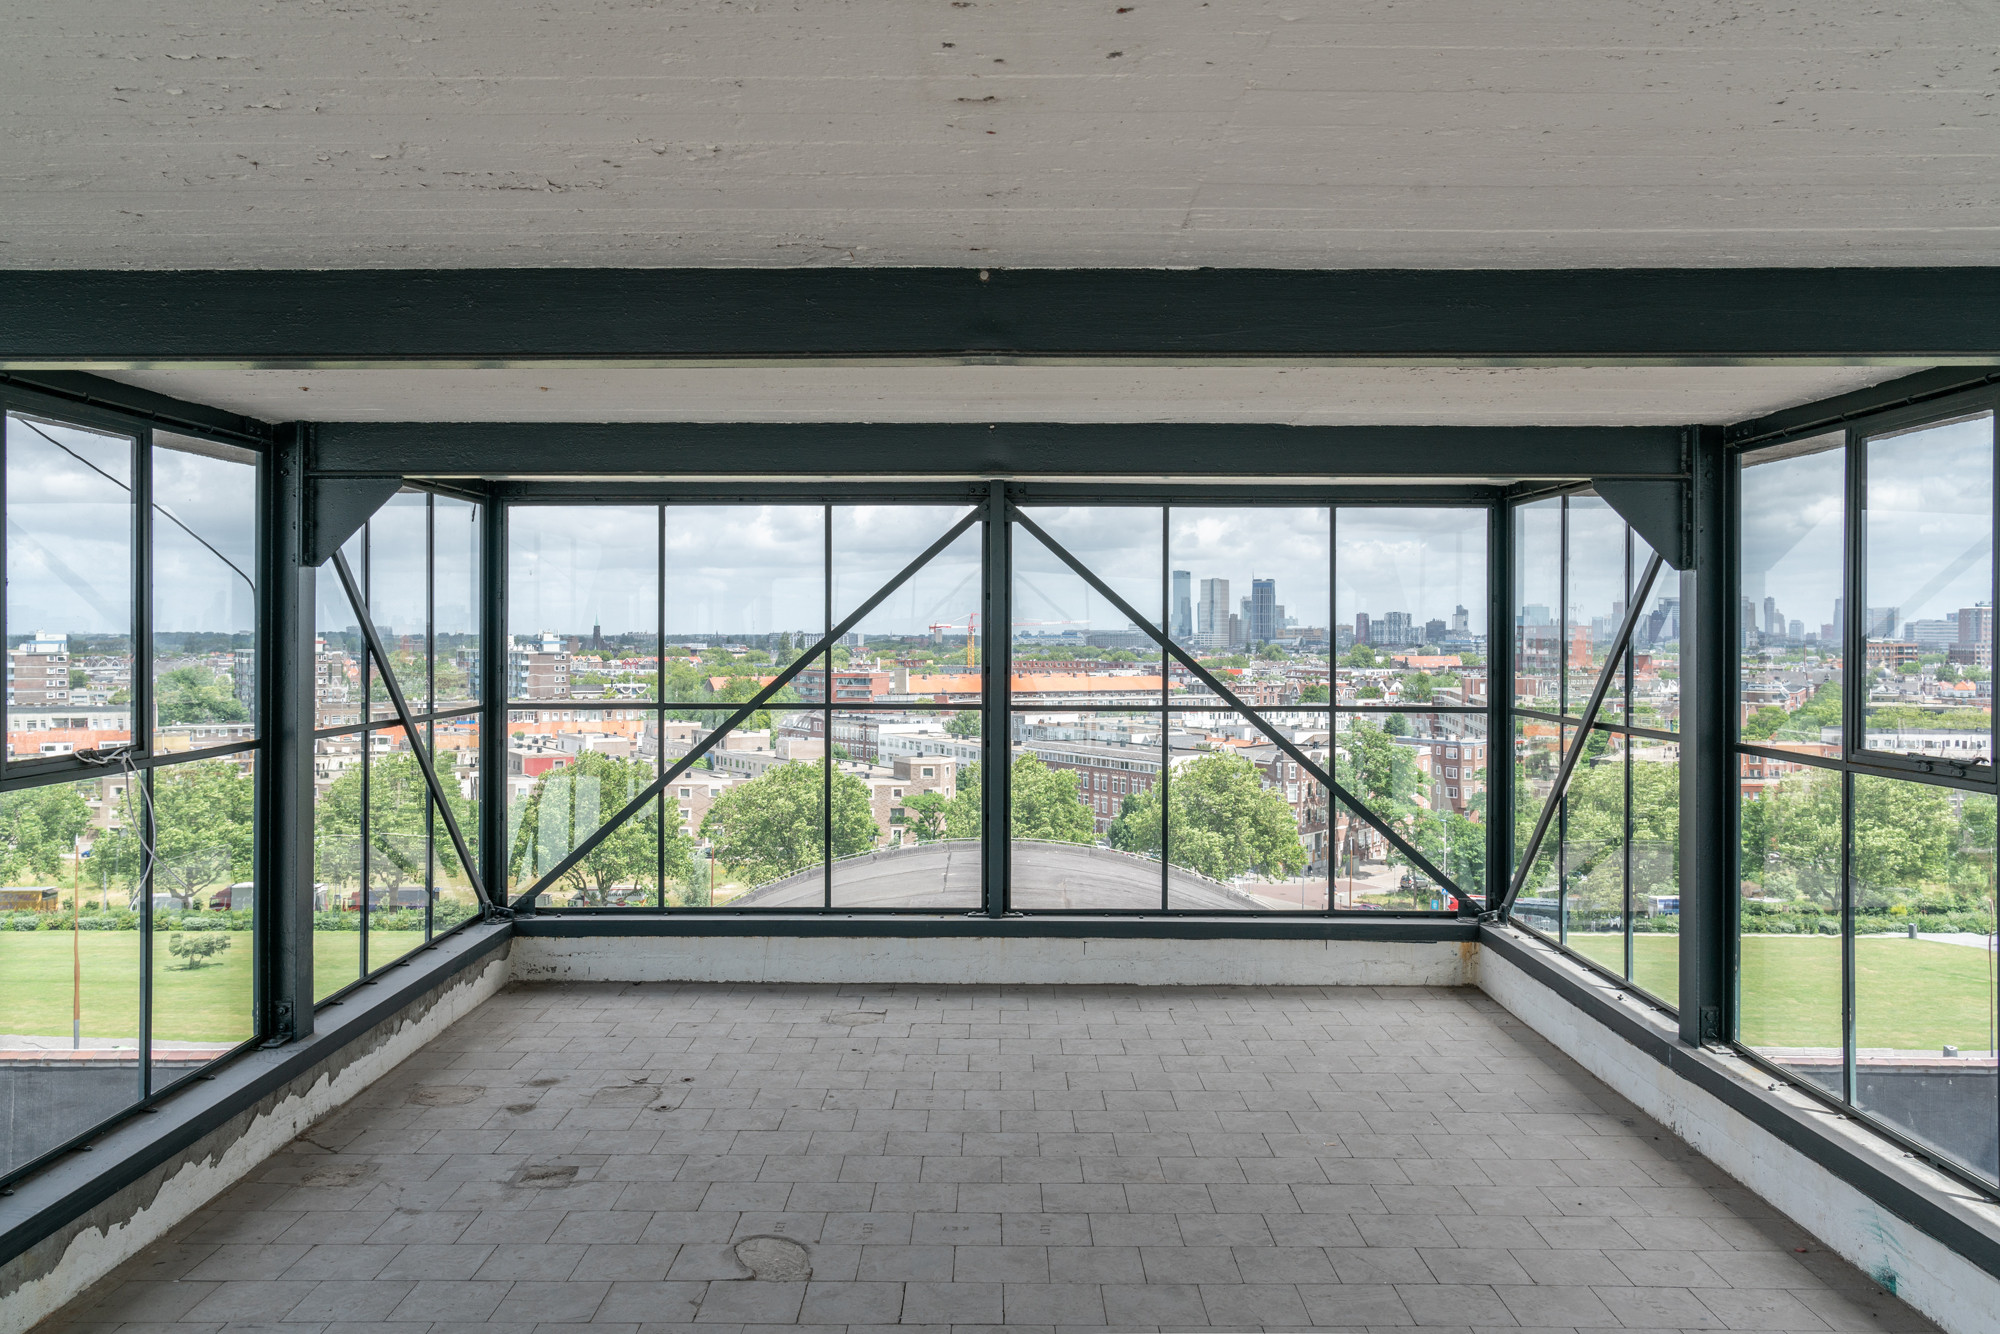 Dit weekend kun je tijdens de Rotterdamse Dakendagen een bezoek brengen aan het iconische HAKA-gebouw!